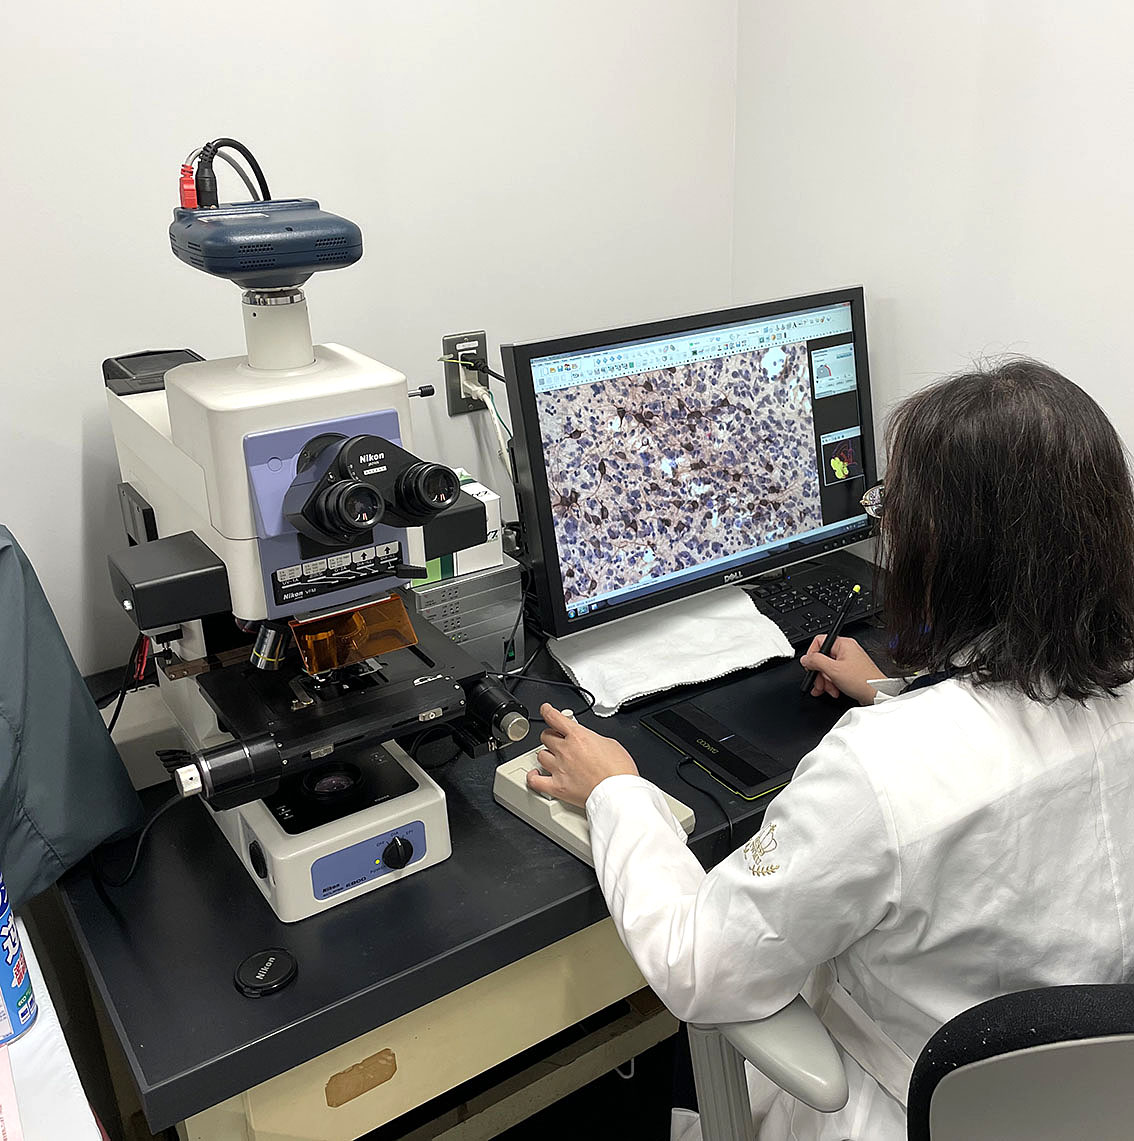 コンピュータに連動した顕微鏡システムで脳切片の染色標本のデータをとっているところです。